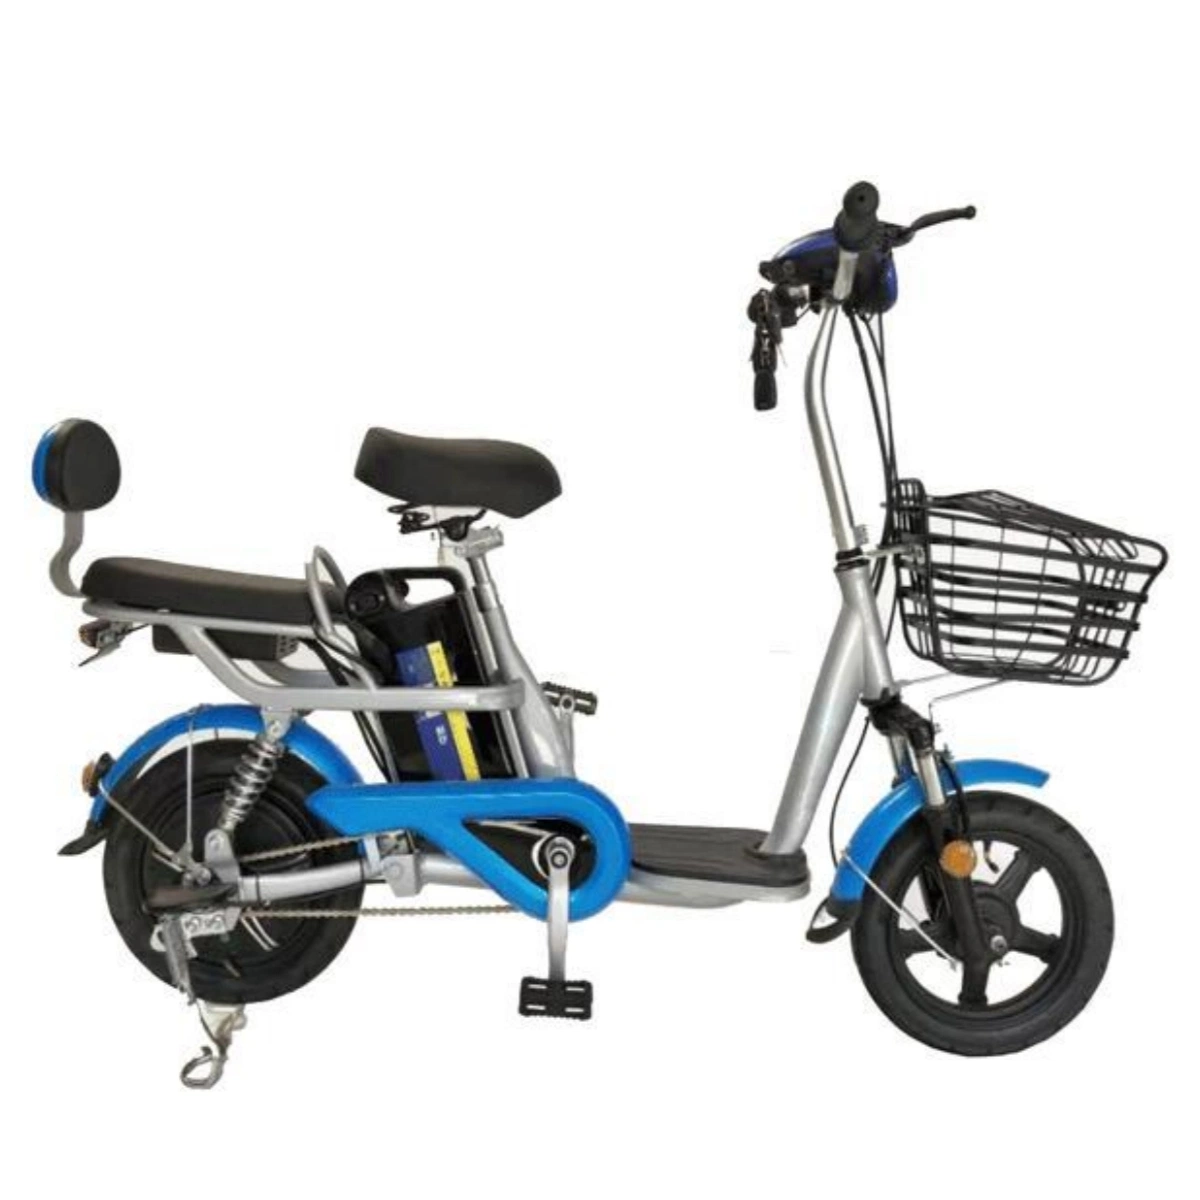 Motor sin escobillas de 350W Popular bicicleta eléctrica bicicleta eléctrica